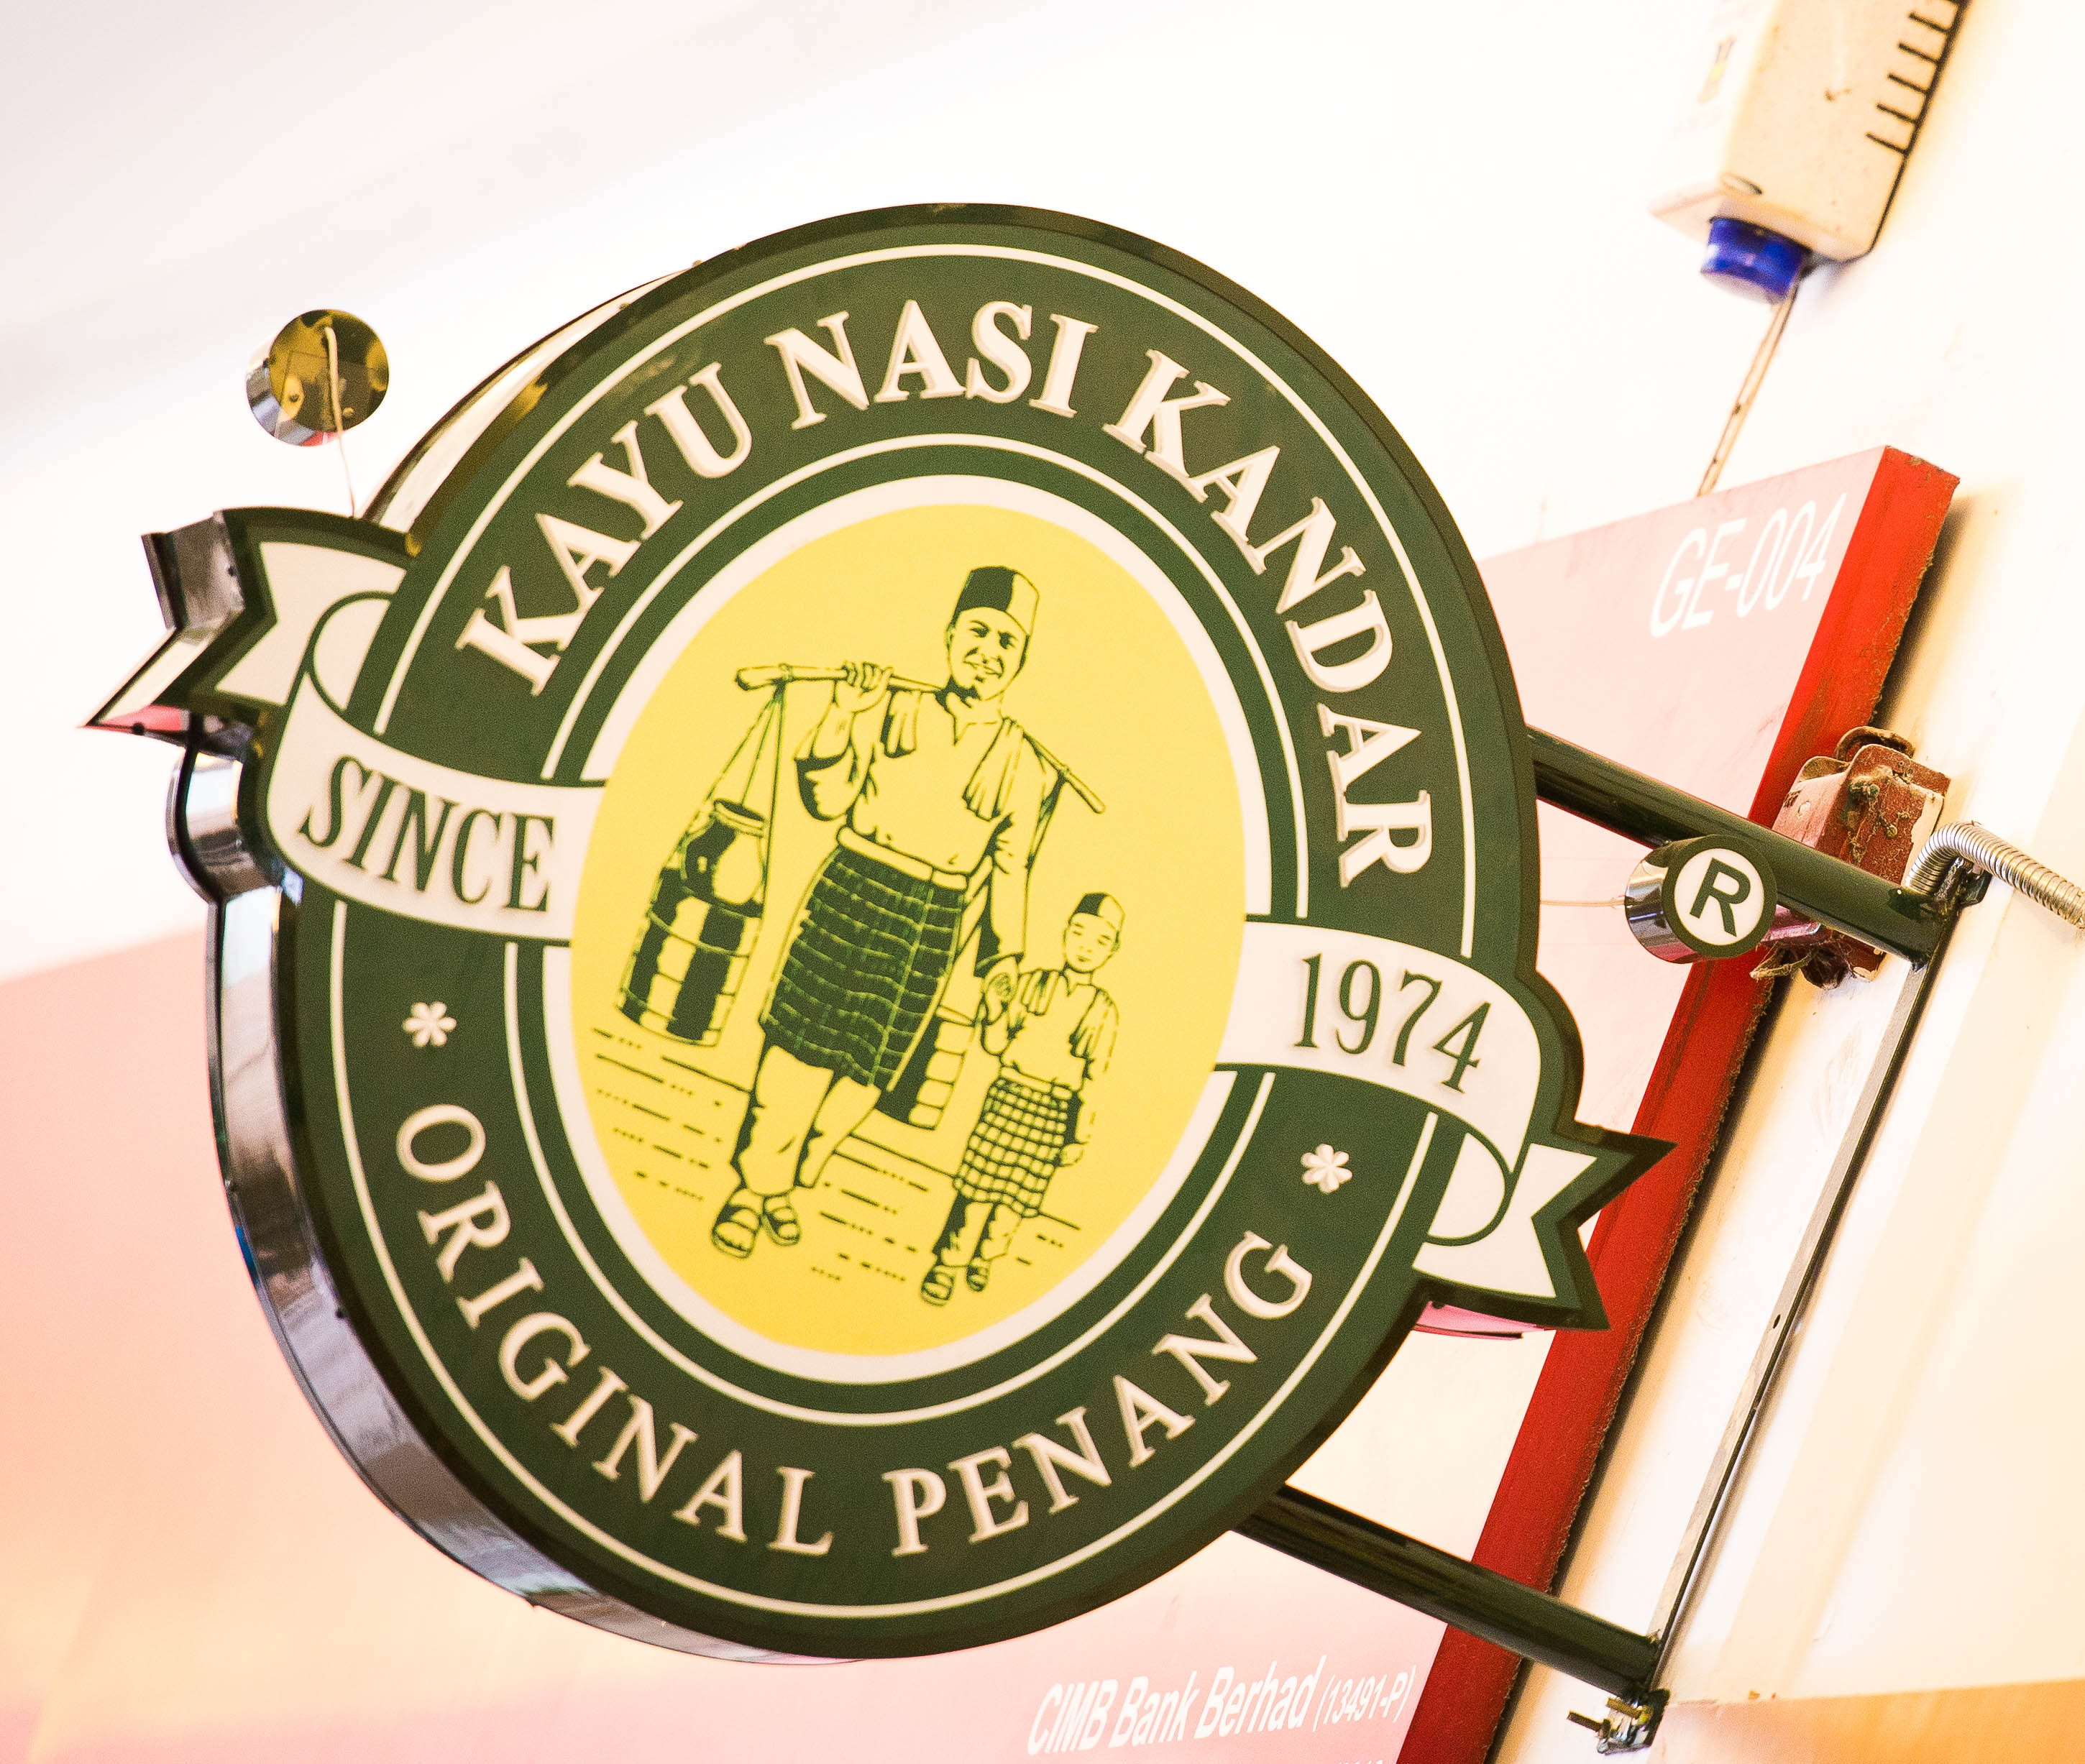 Original Penang Kayu Nasi Kandar (Under Renovation)